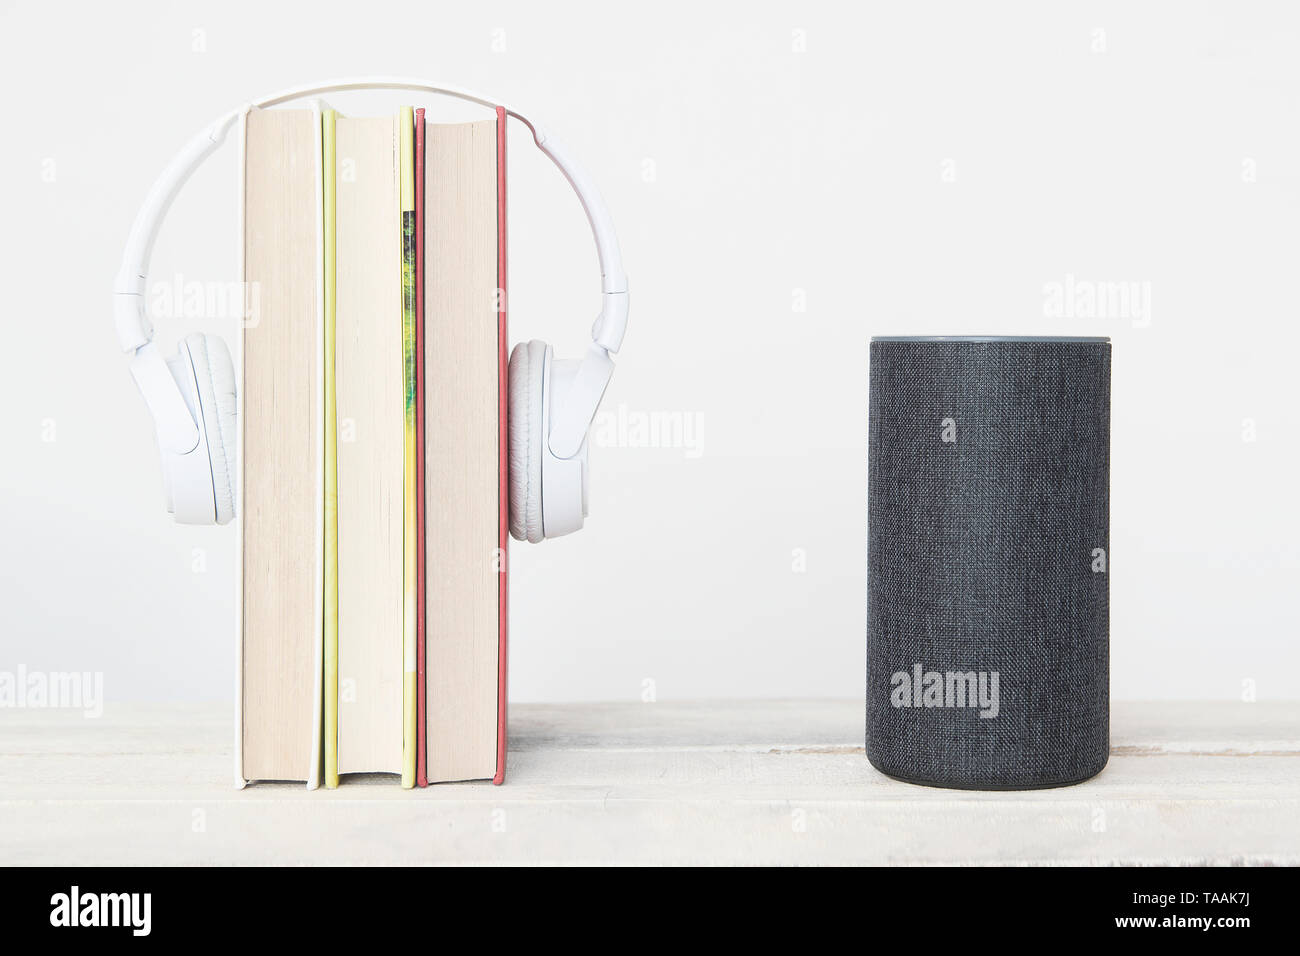 Smart speaker Amazon Alexa Echo dispositivo accanto ad alcuni libri e hearphones contro uno sfondo bianco. Svuotare lo spazio di copia per l'editor di testo Foto Stock